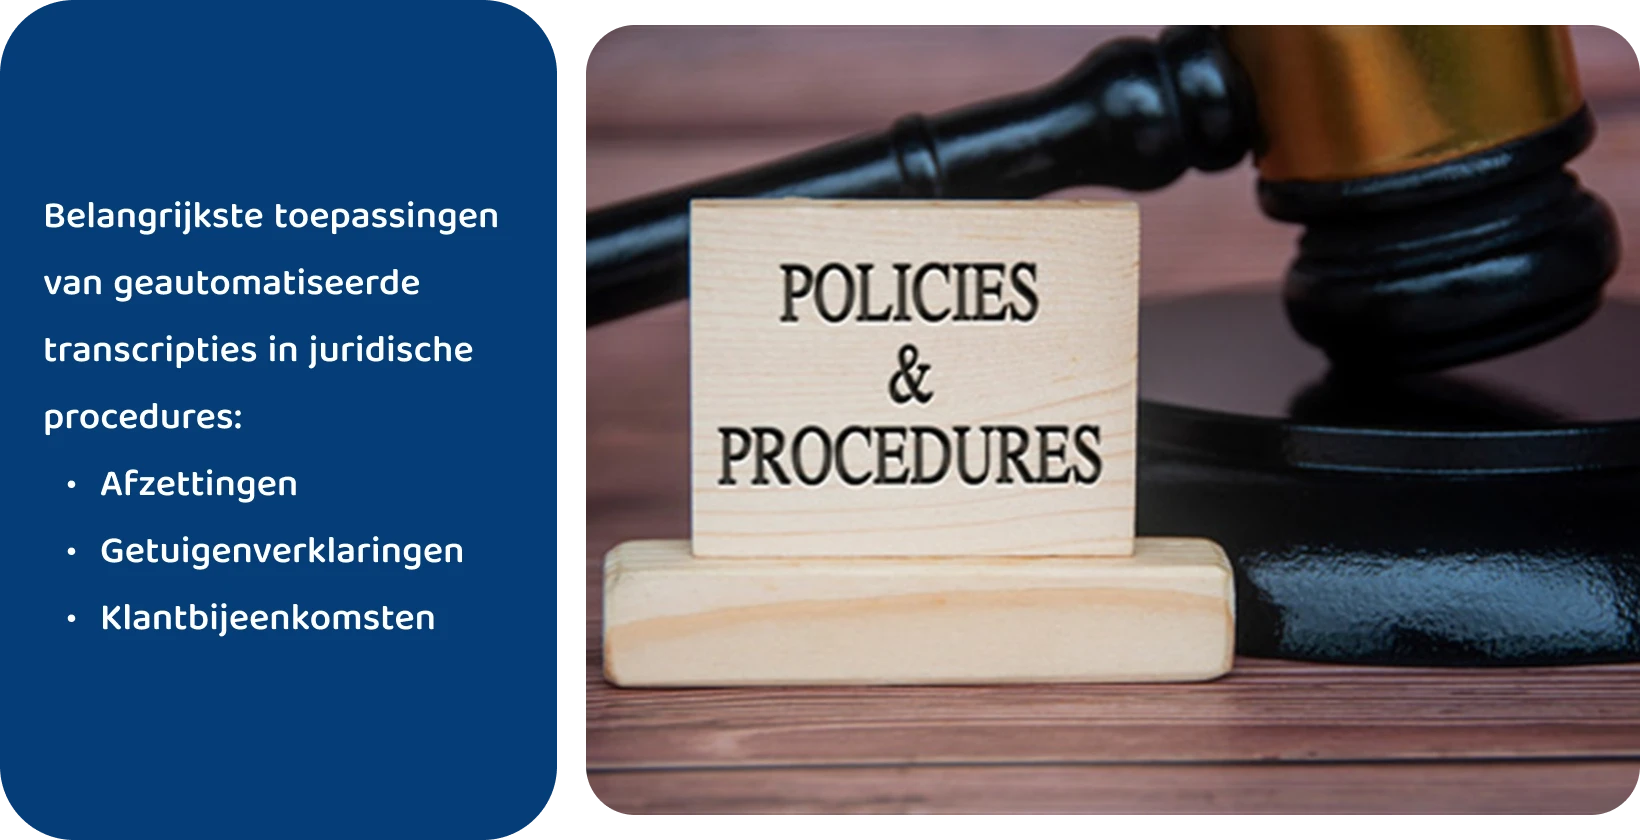 De hamer naast het bord 'Policies & Procedures', dat de wettelijke normen vertegenwoordigt waaraan geautomatiseerde transcriptietools voldoen.